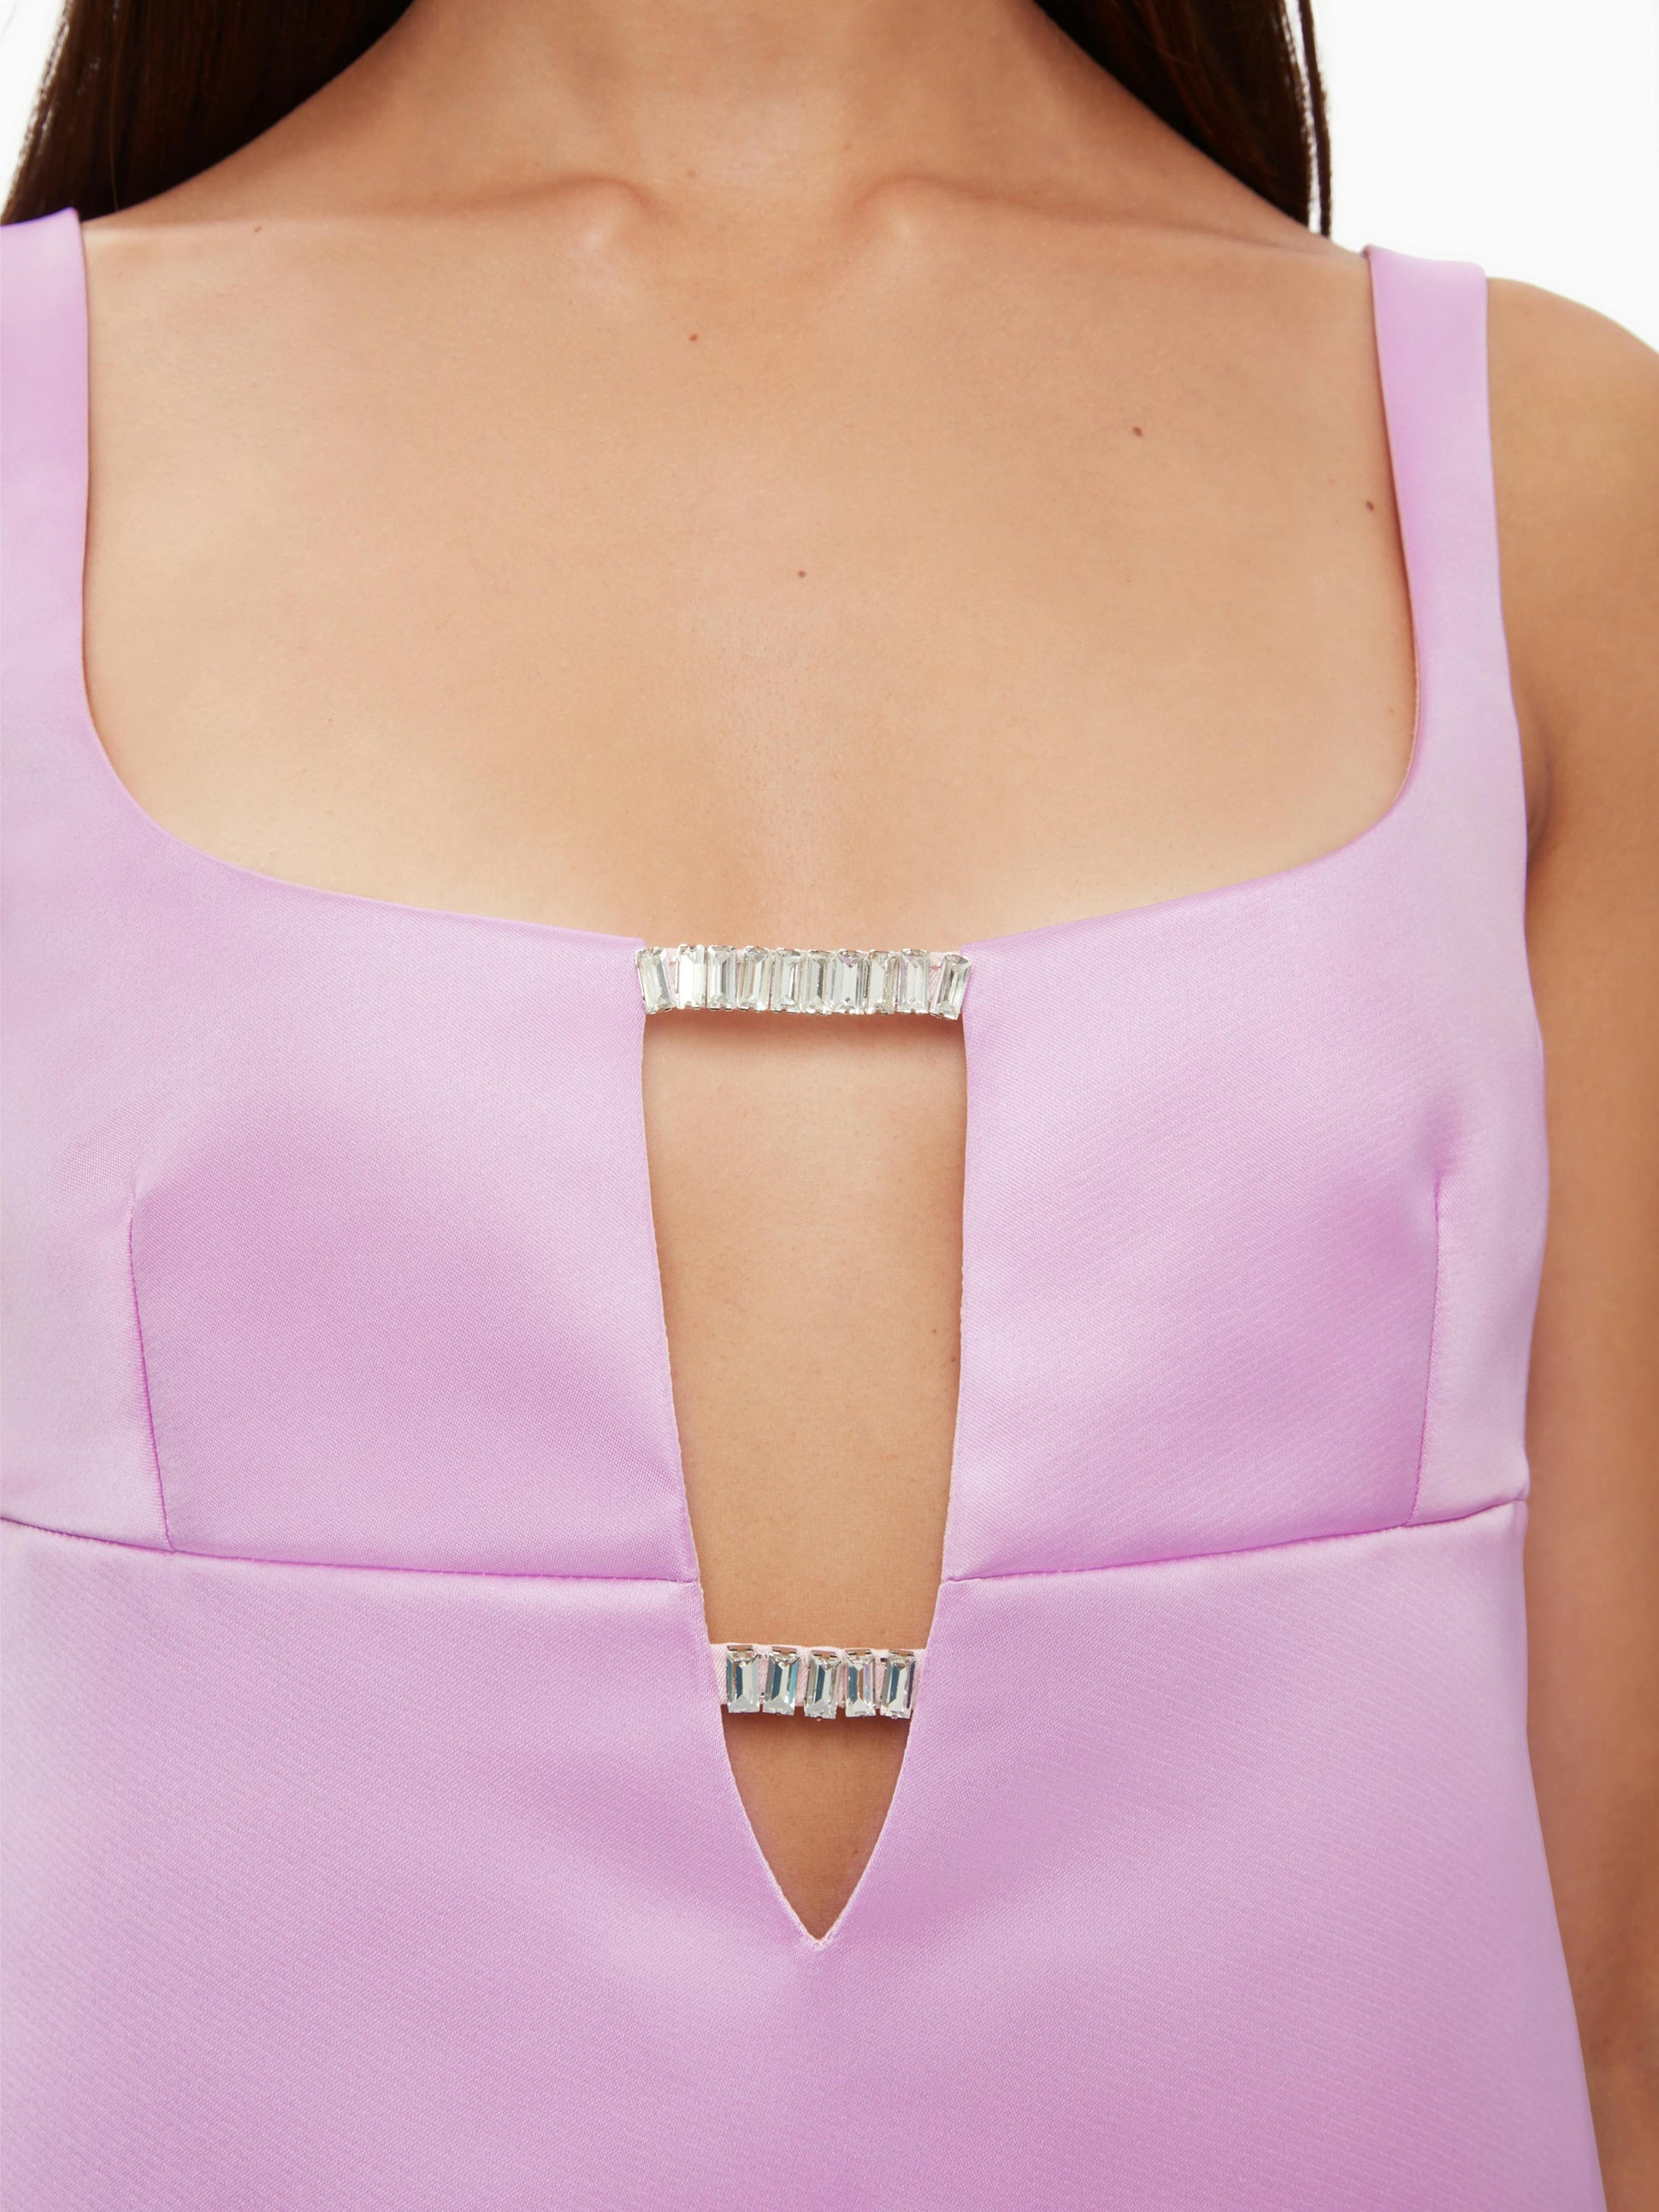 Satin mini a-line dress in pink - Nina Ricci